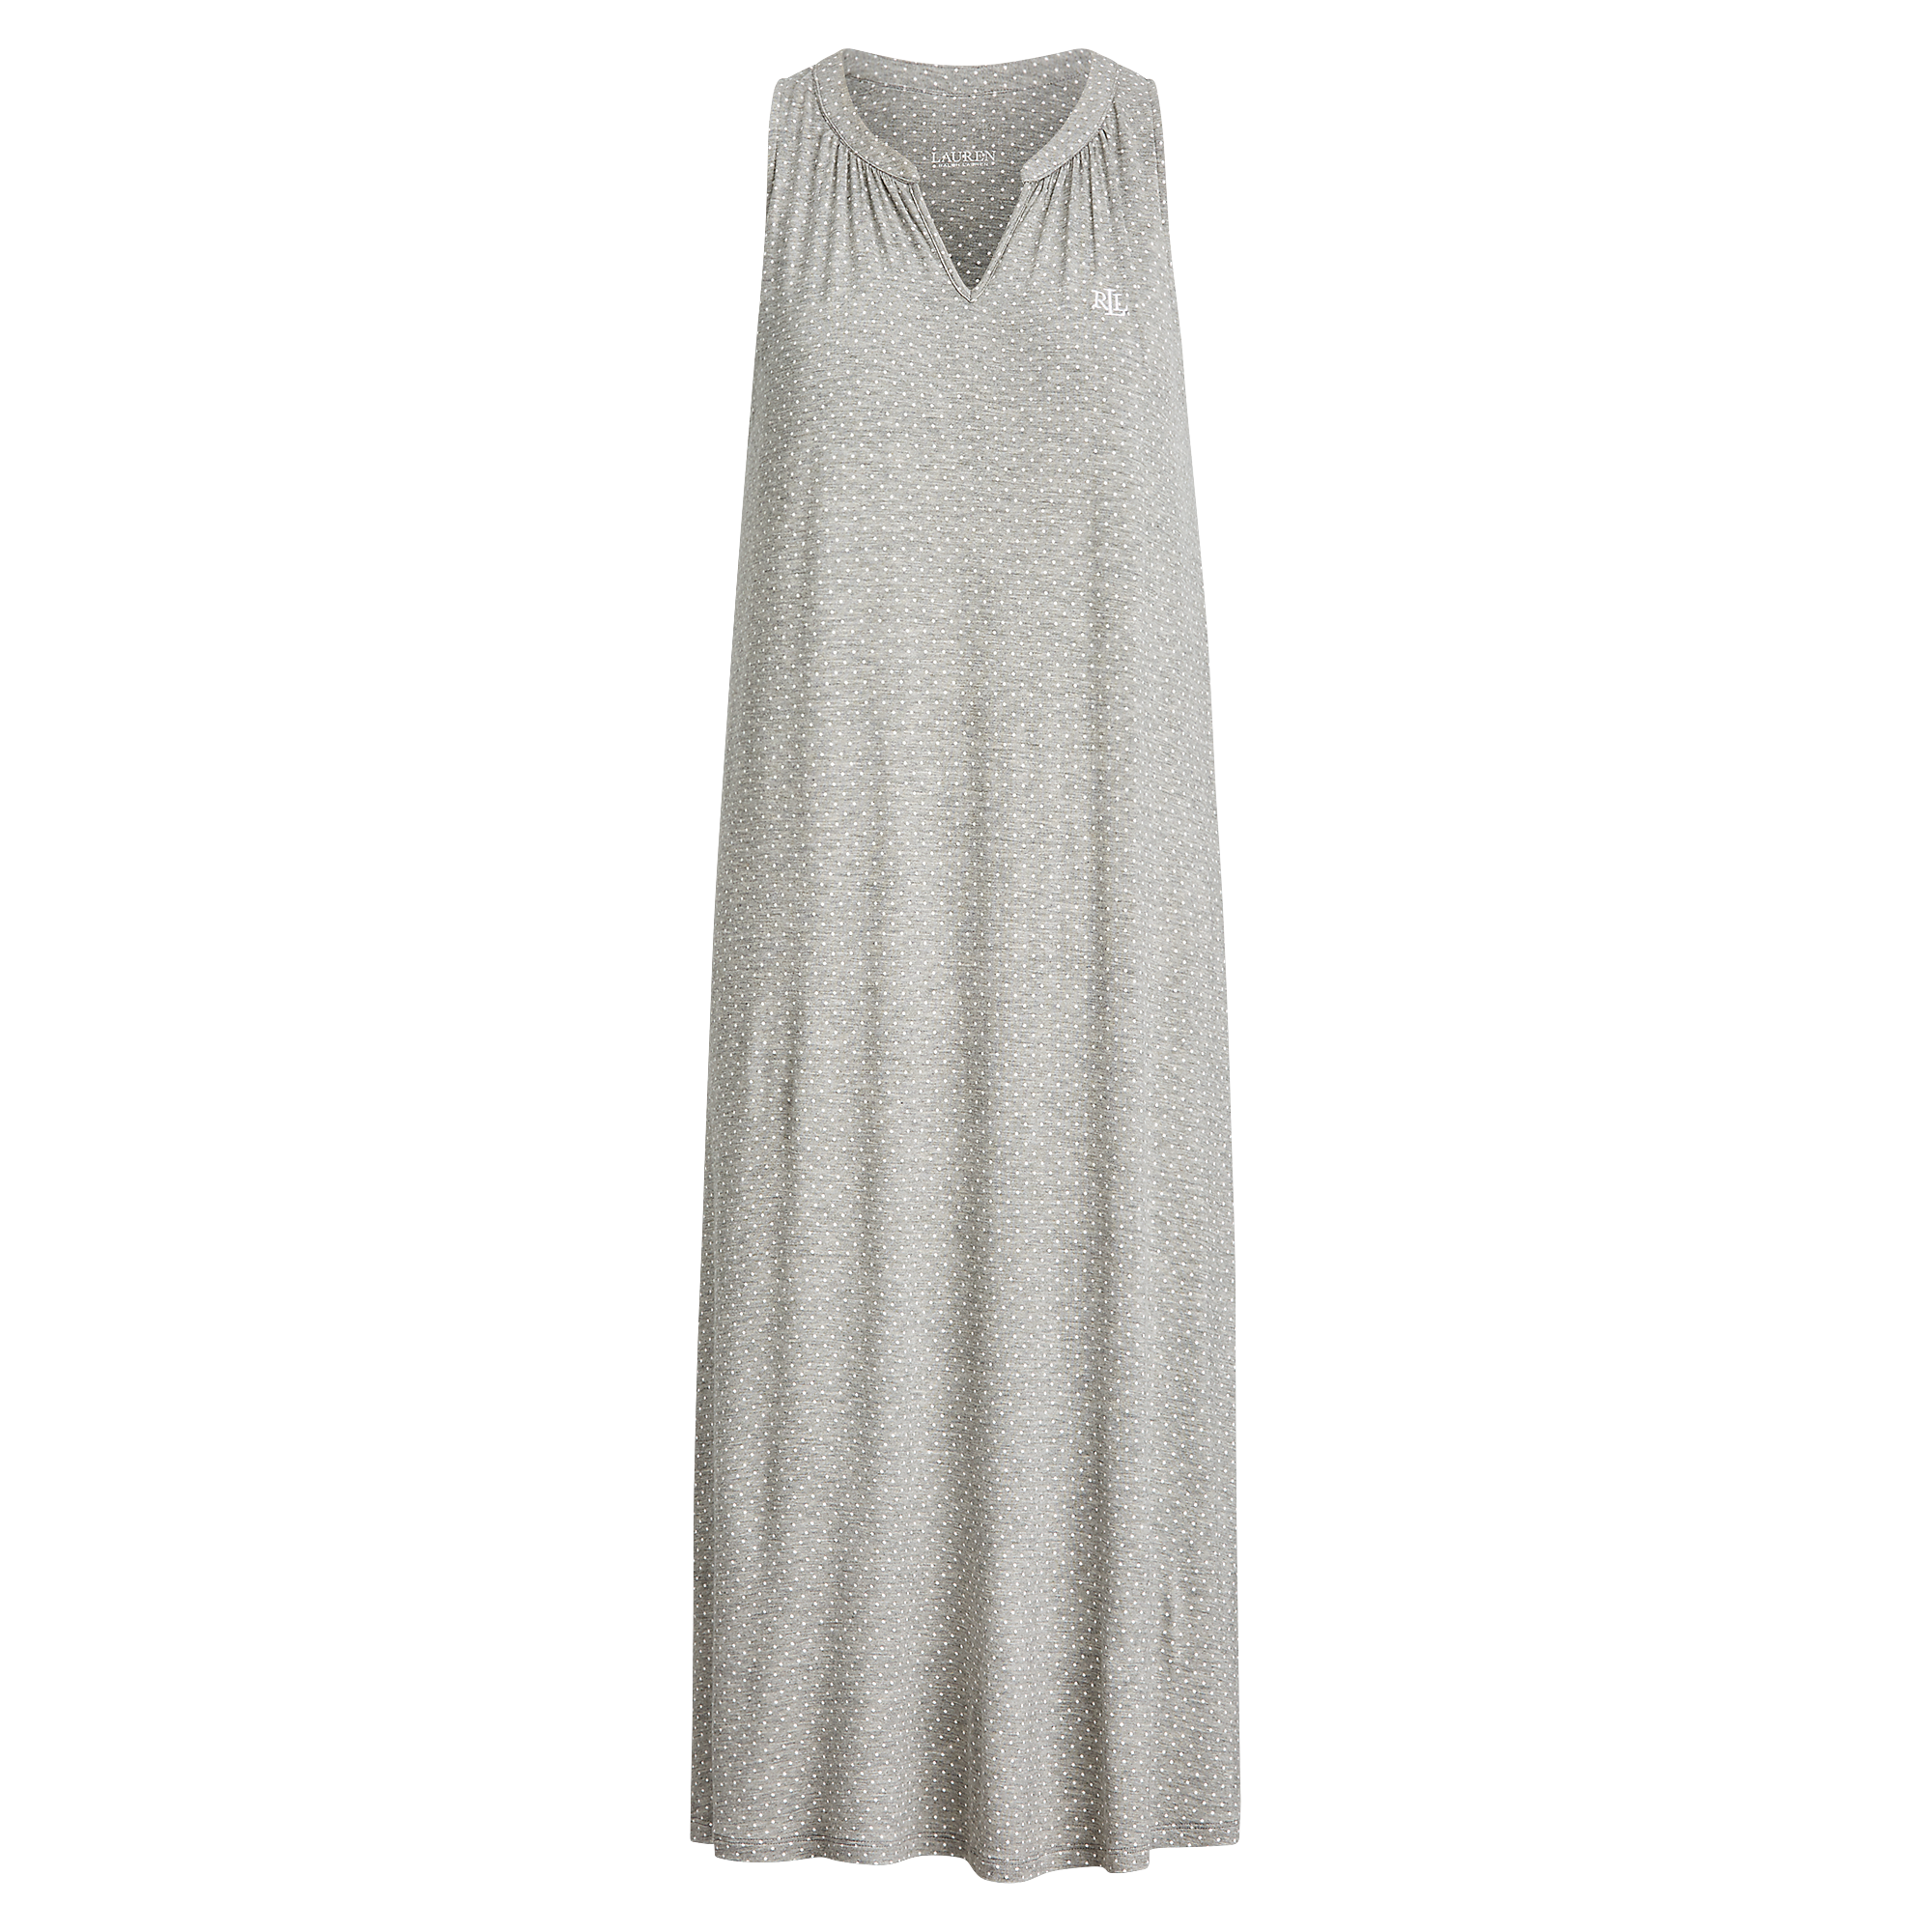 Ralph Lauren Dot-Print Stretch Nightgown. 1